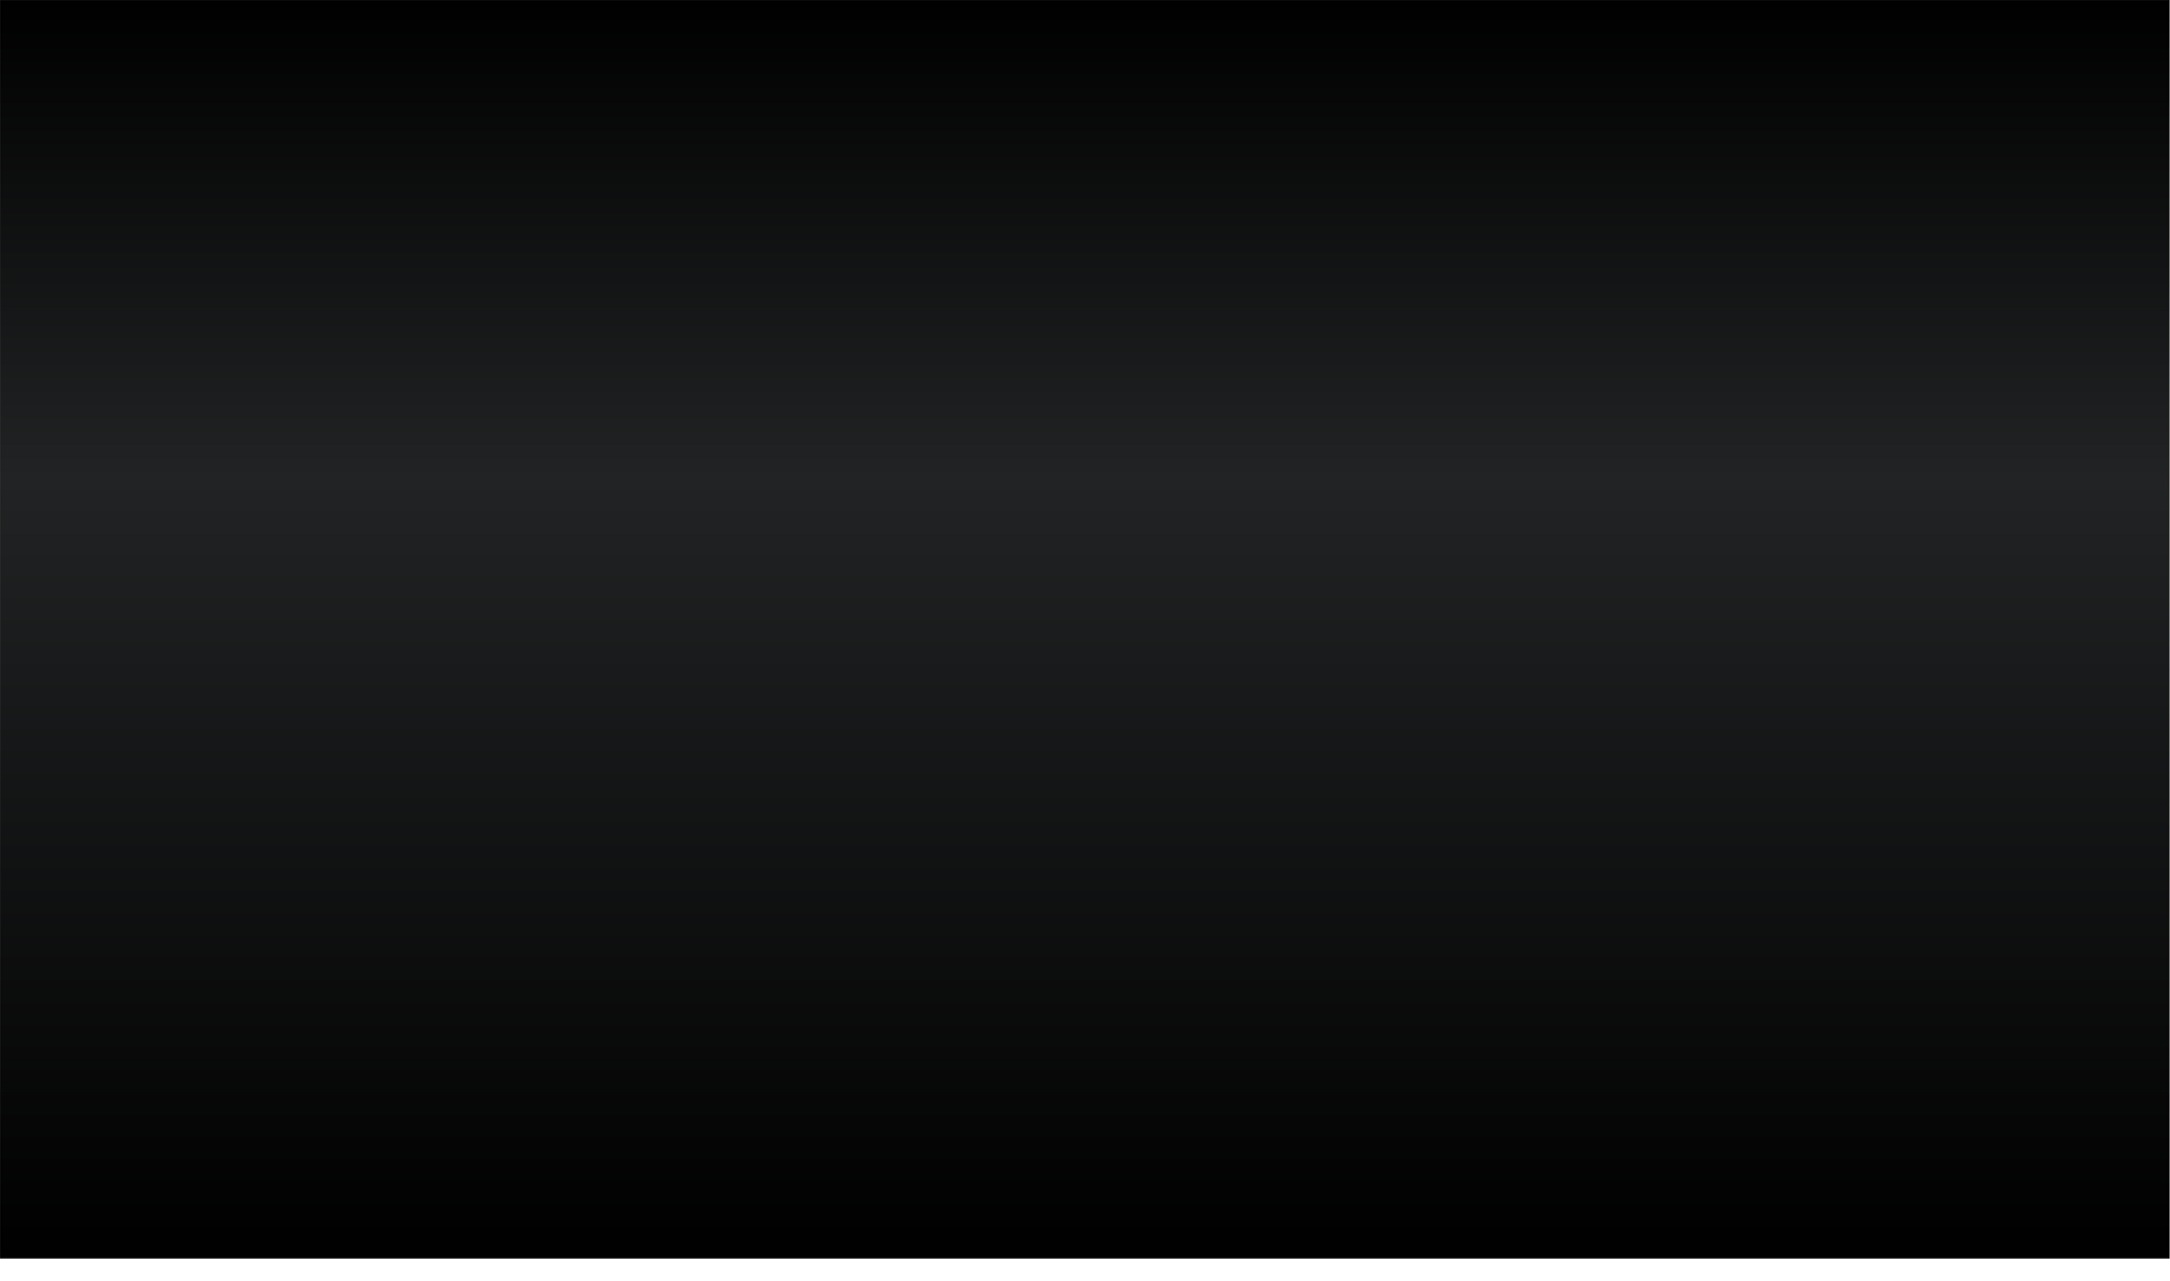 Free download Red Black Fade Background Backgroundgrayblackjpg [2170x1281]  for your Desktop, Mobile & Tablet | Explore 77+ Black Background Images |  Wallpaper Images, Images With Black Background, Black Wallpaper Images